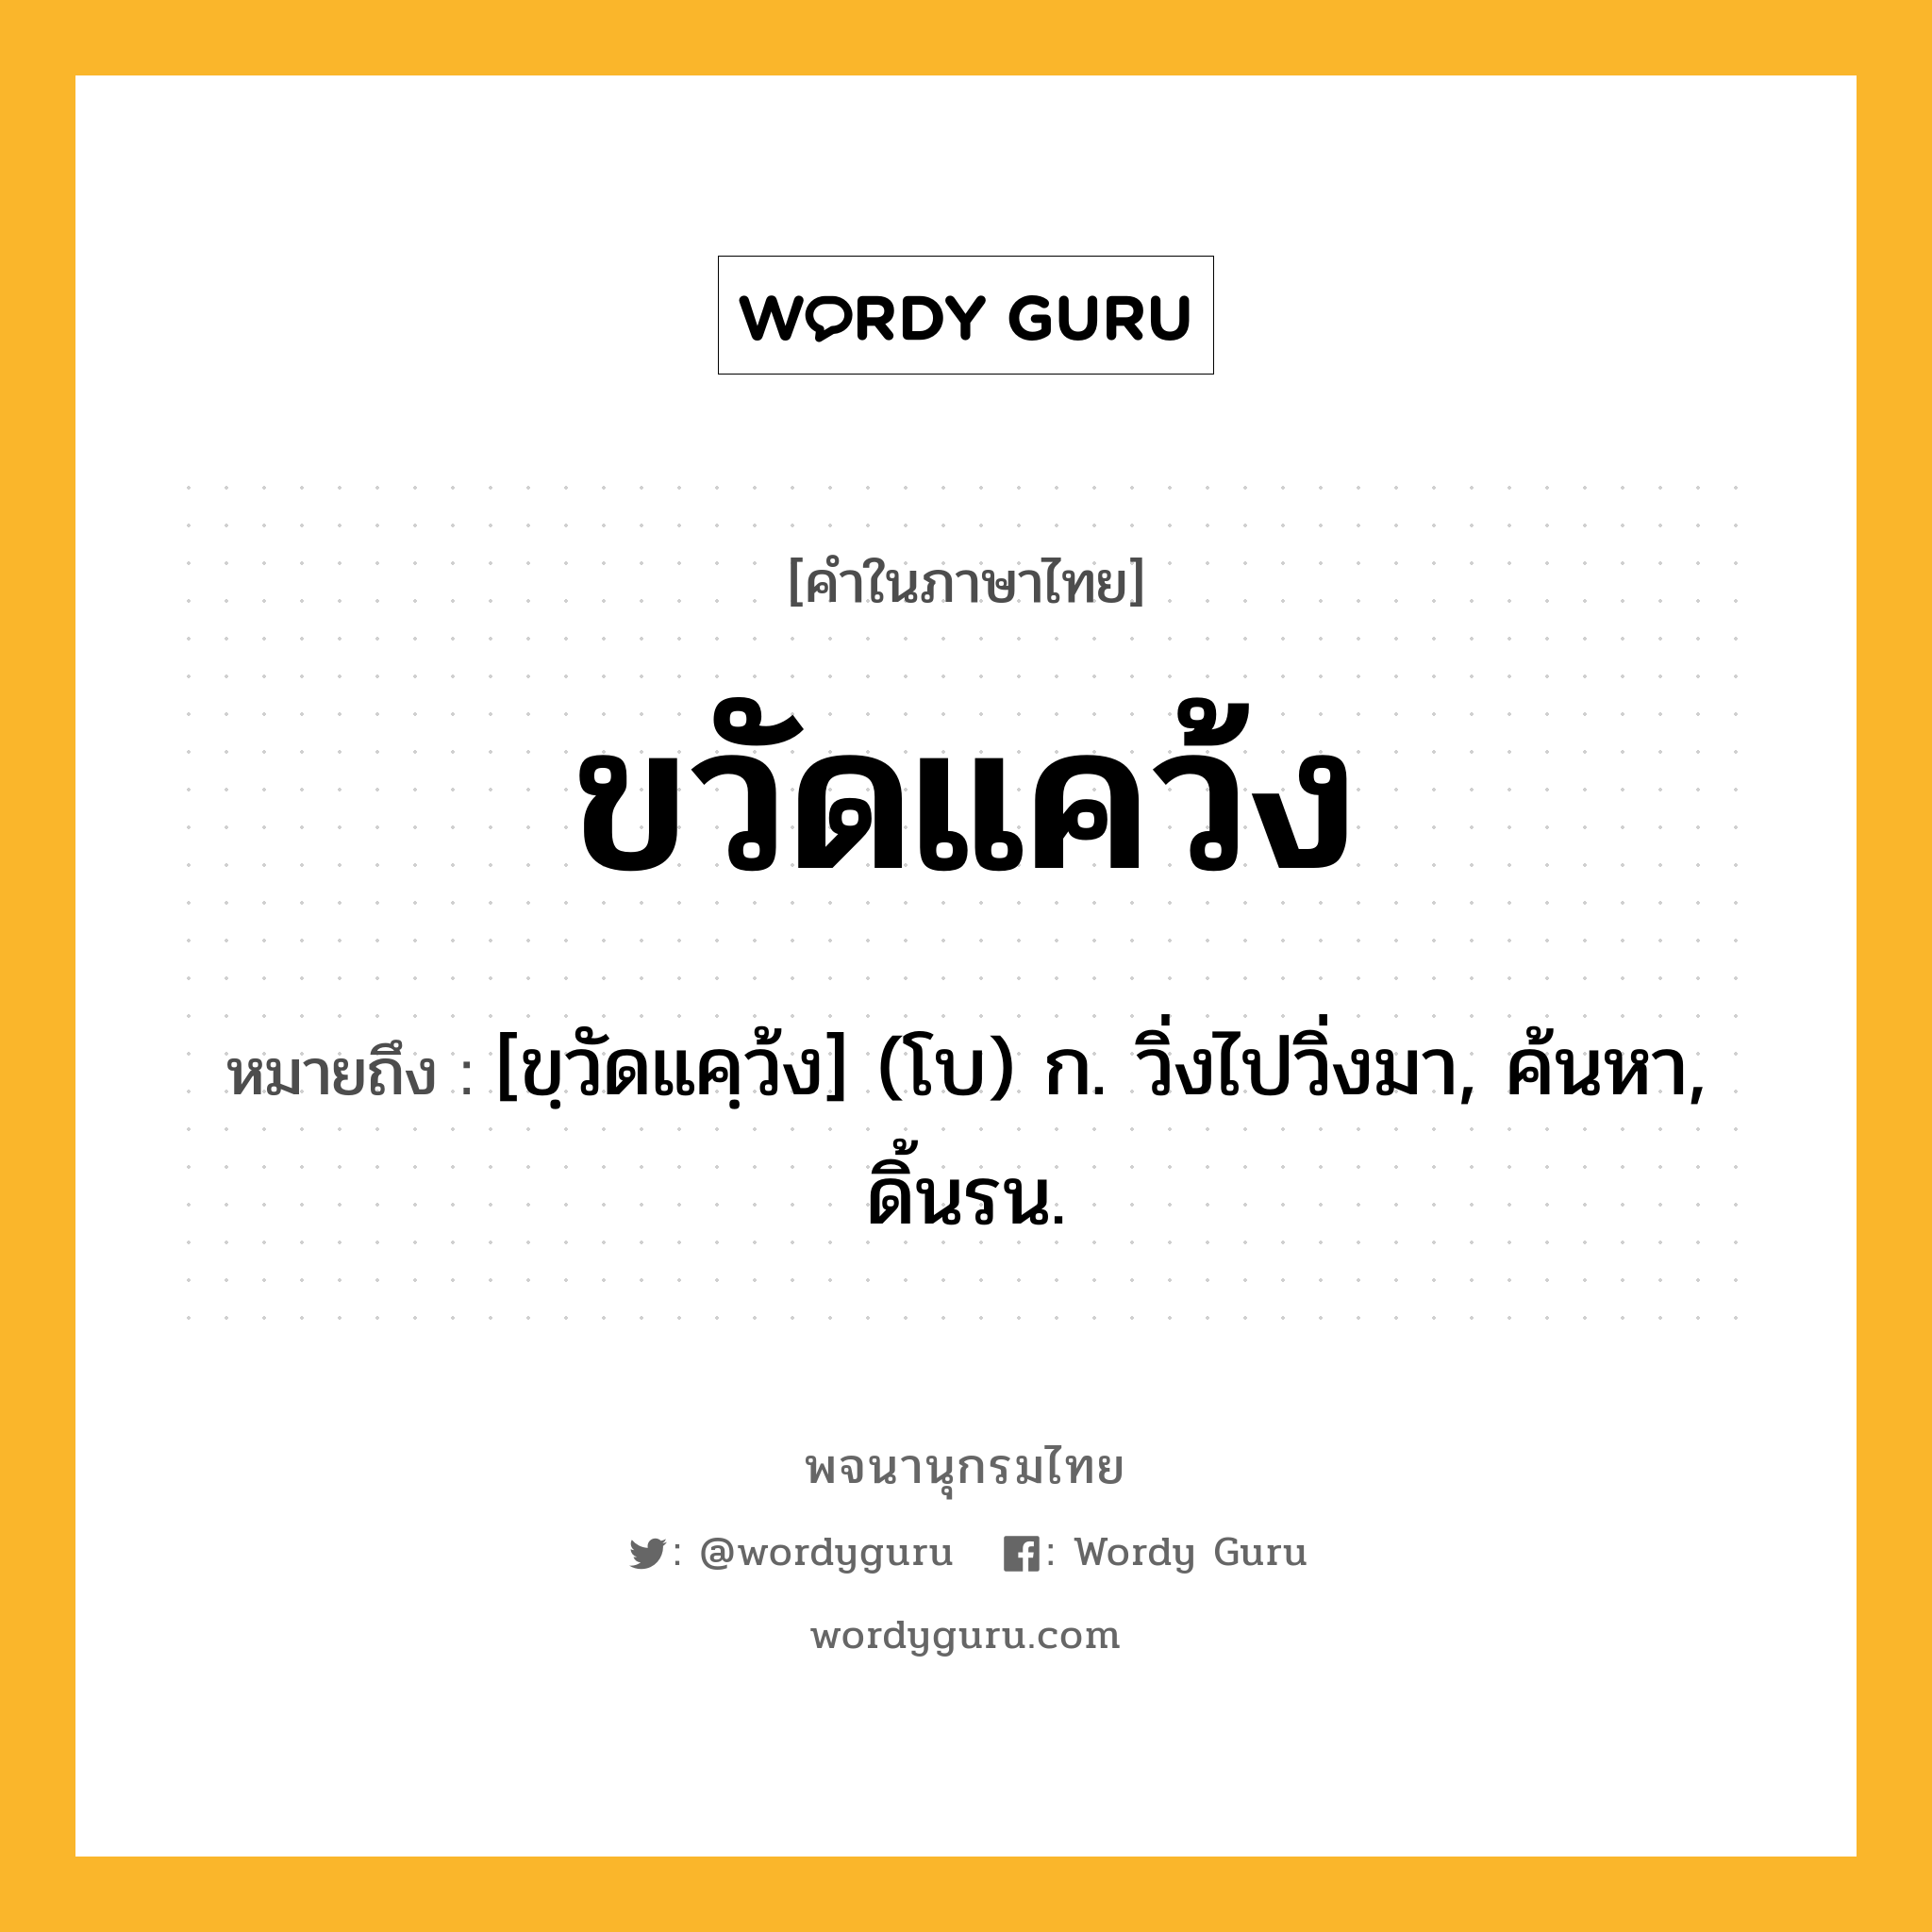 ขวัดแคว้ง หมายถึงอะไร?, คำในภาษาไทย ขวัดแคว้ง หมายถึง [ขฺวัดแคฺว้ง] (โบ) ก. วิ่งไปวิ่งมา, ค้นหา, ดิ้นรน.